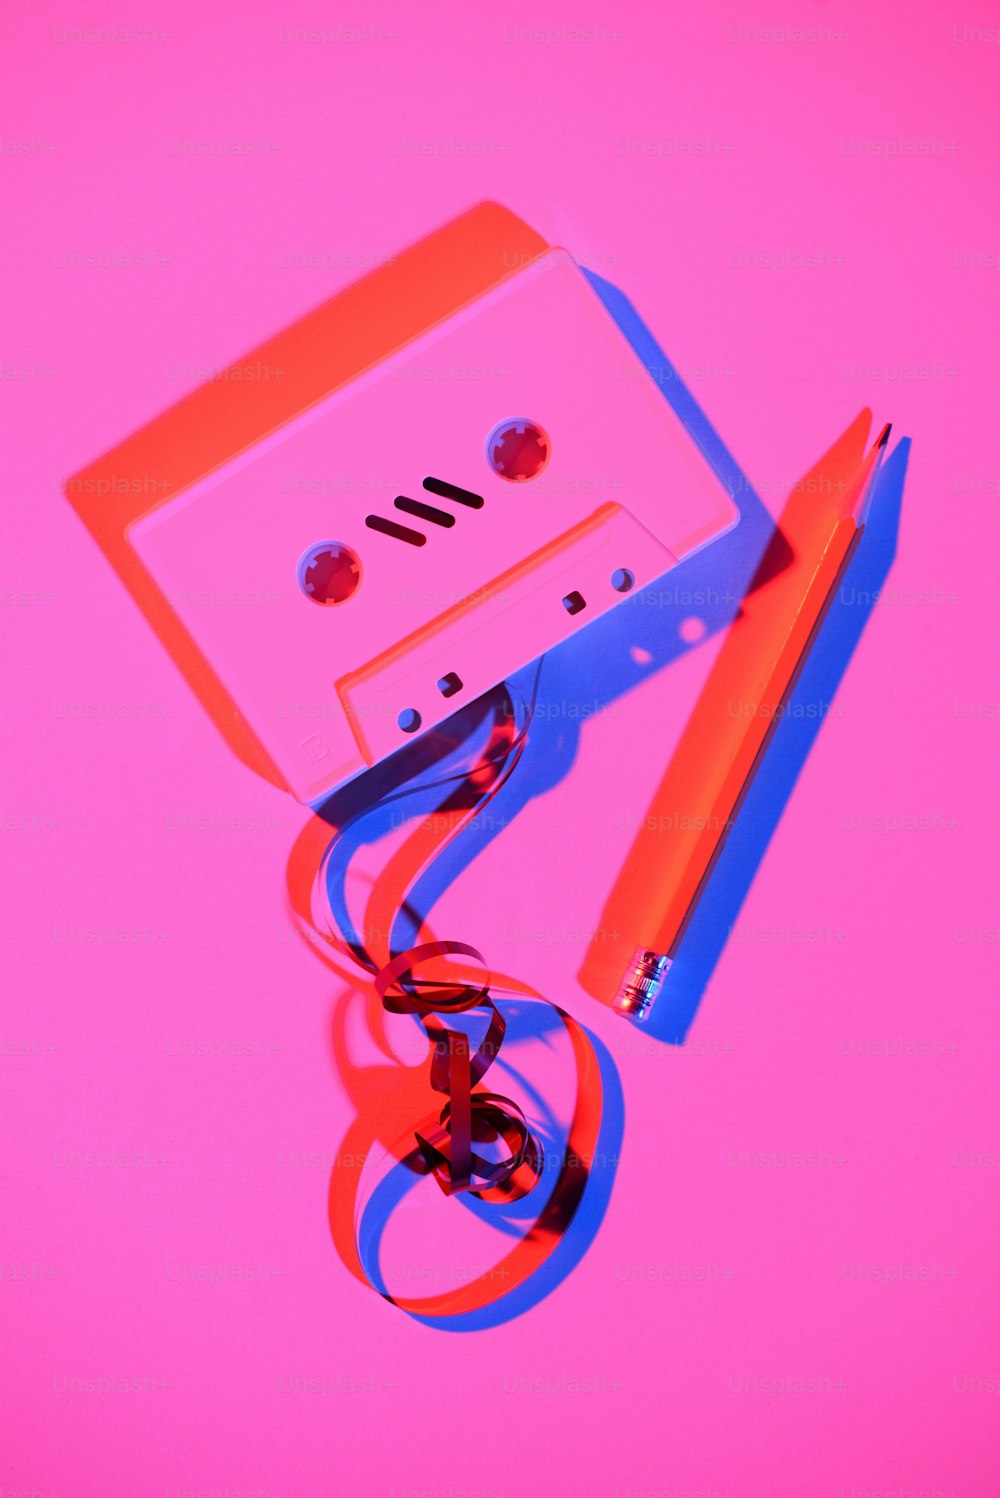 Imagen rosa tonificada de casete de audio retro con lápiz y cinta adhesiva